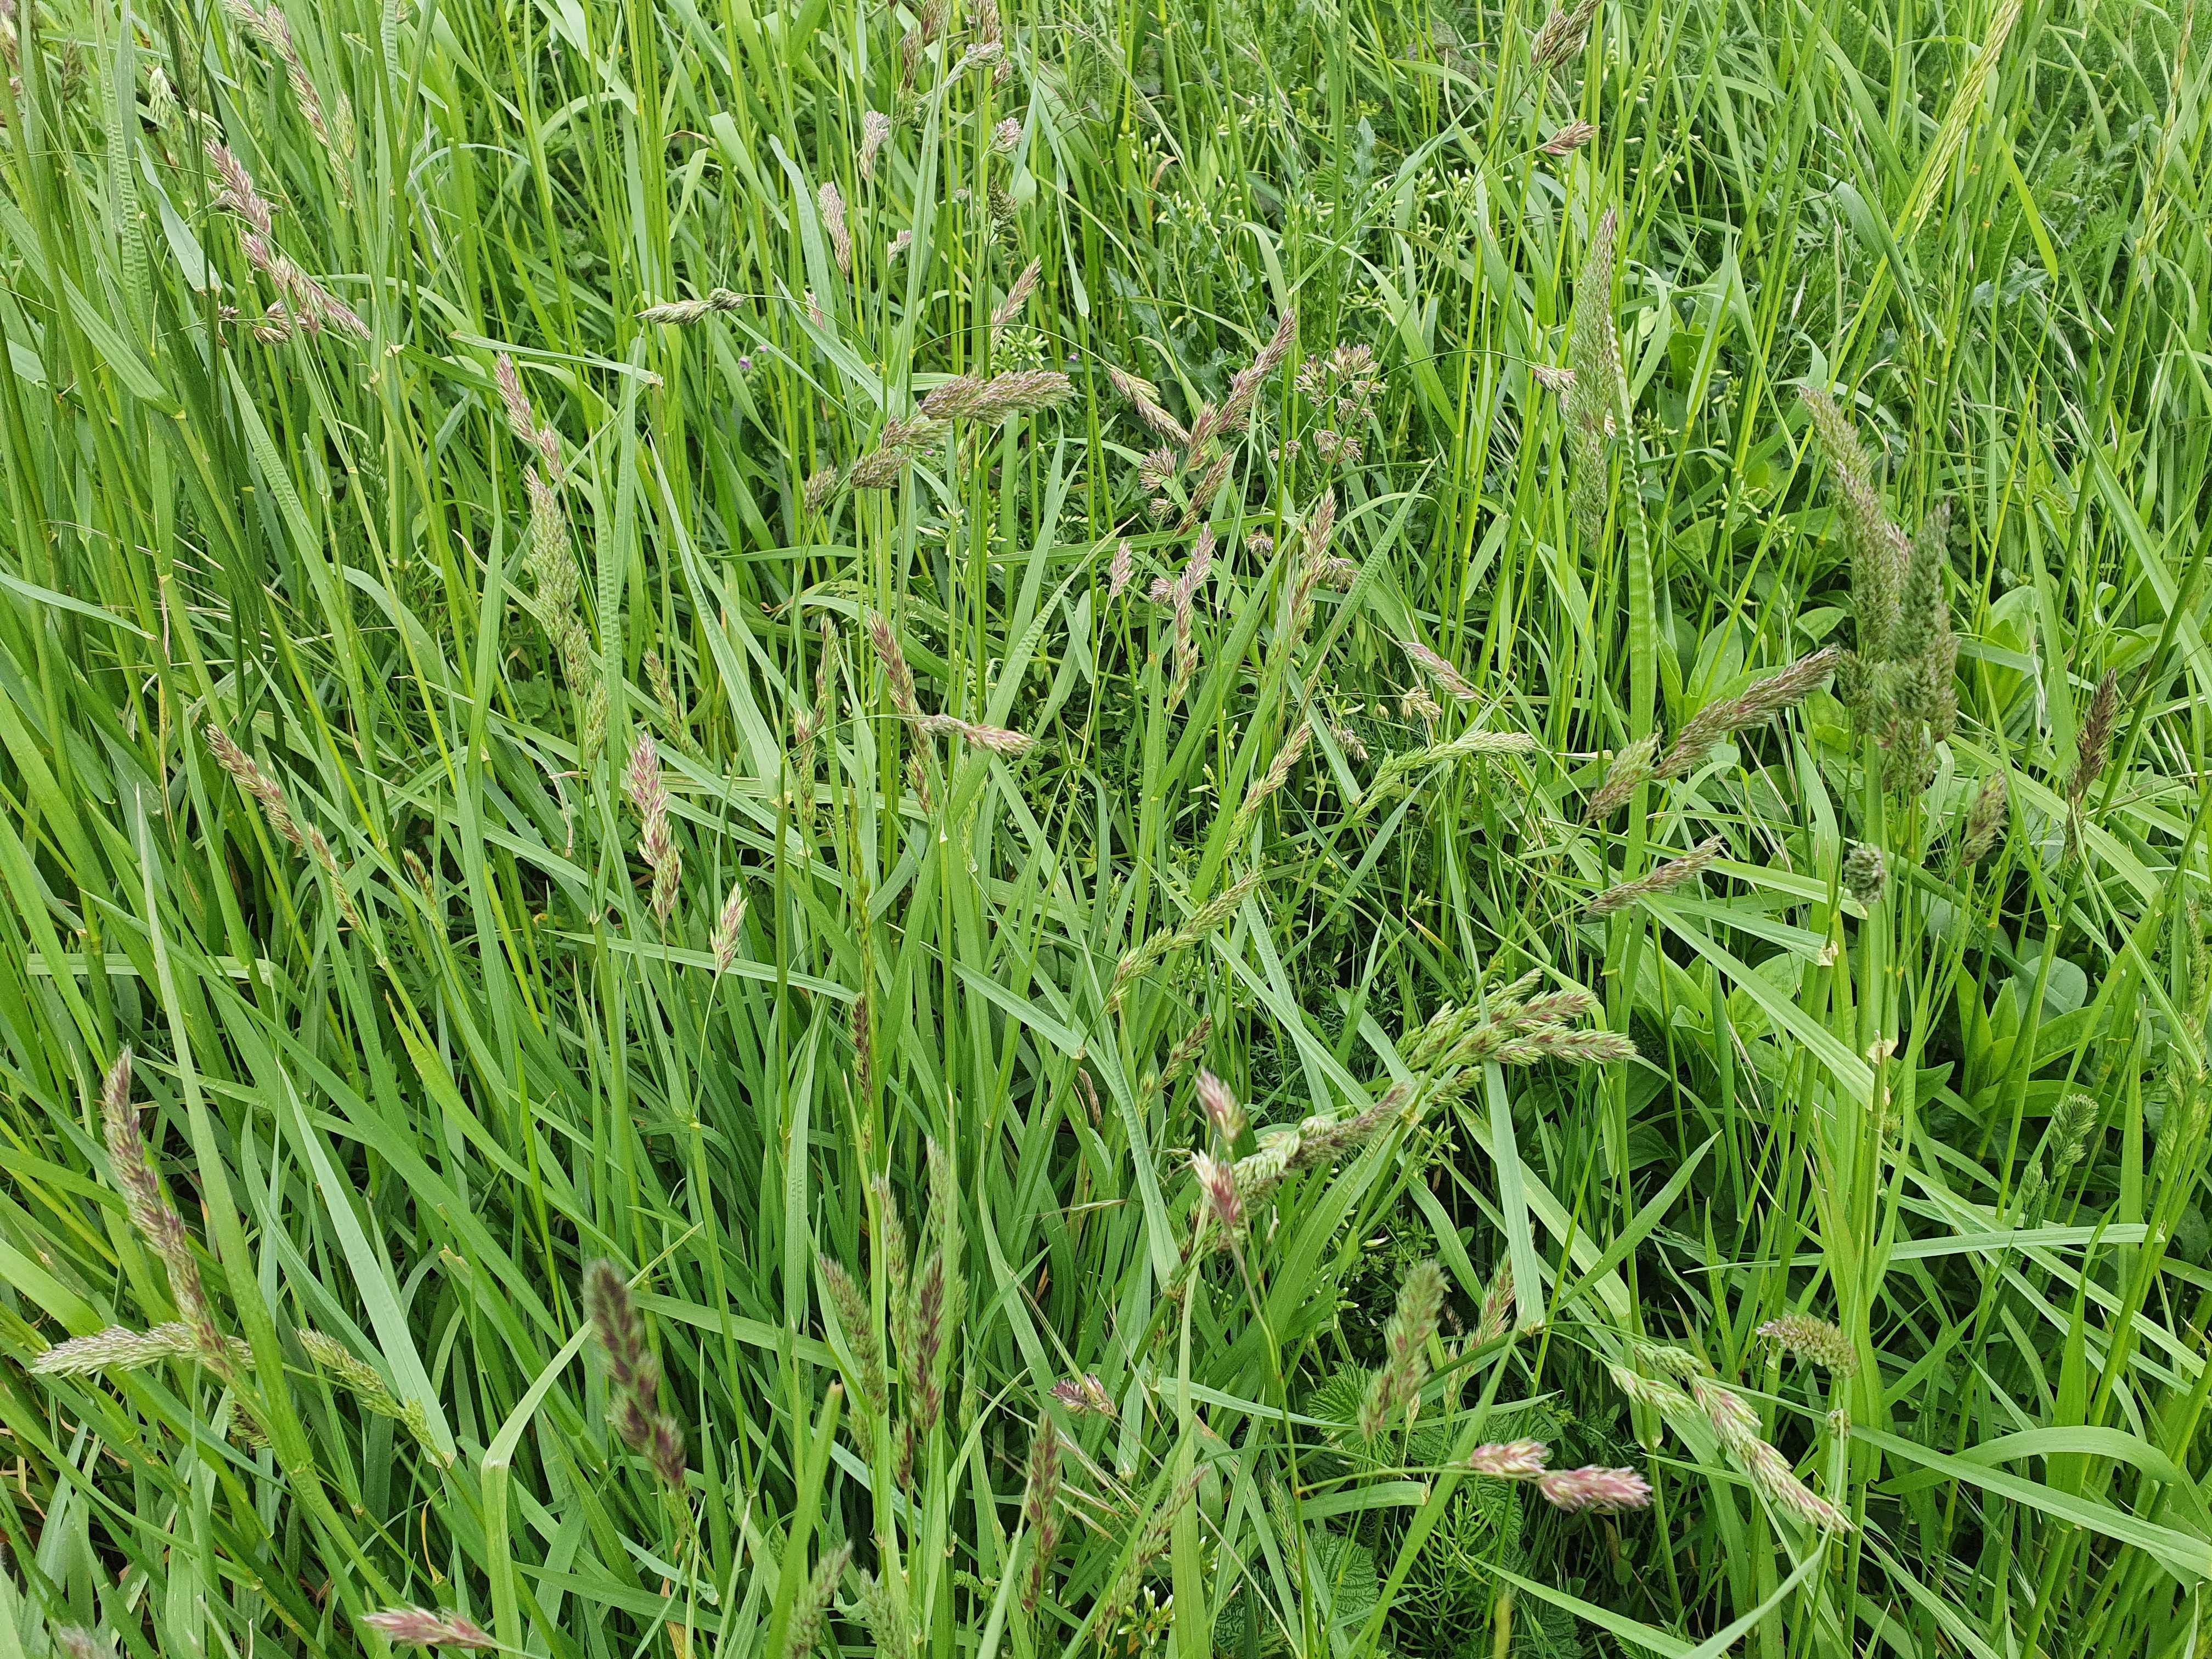 hooikoorts, gras, grassen
Johnny Willemsen